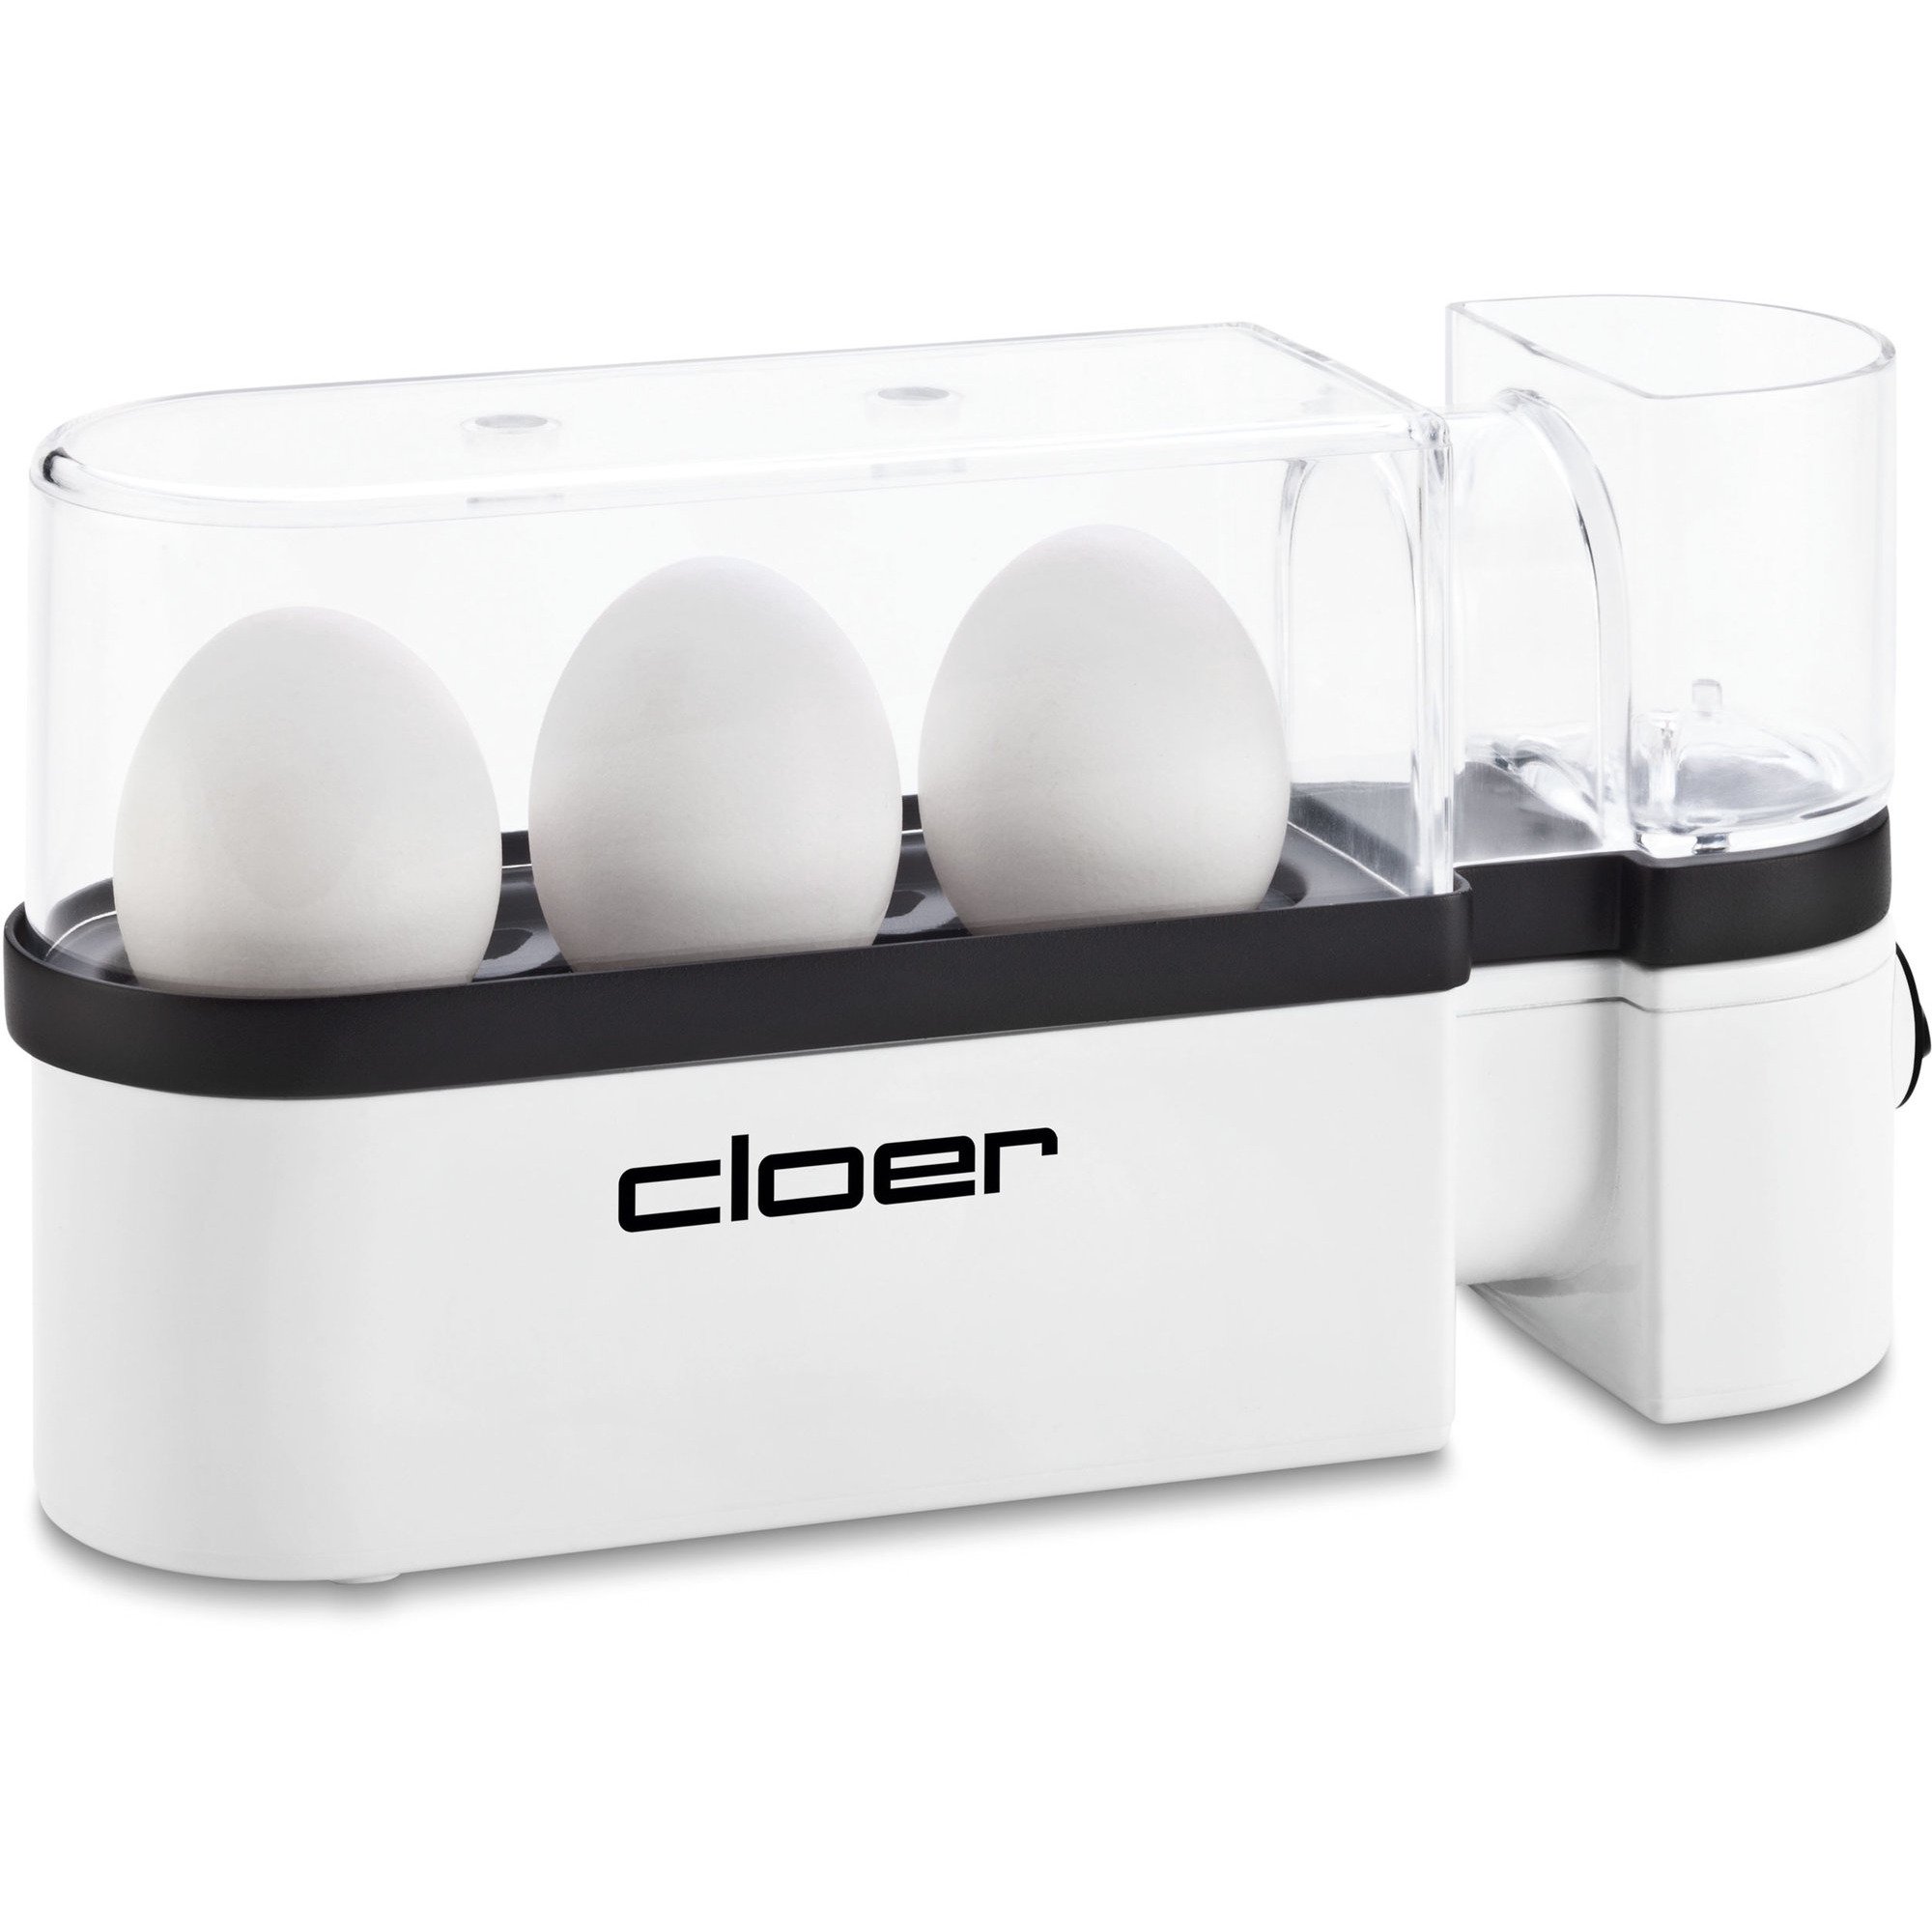 Cloer Æggekoger 3 æg Hvid